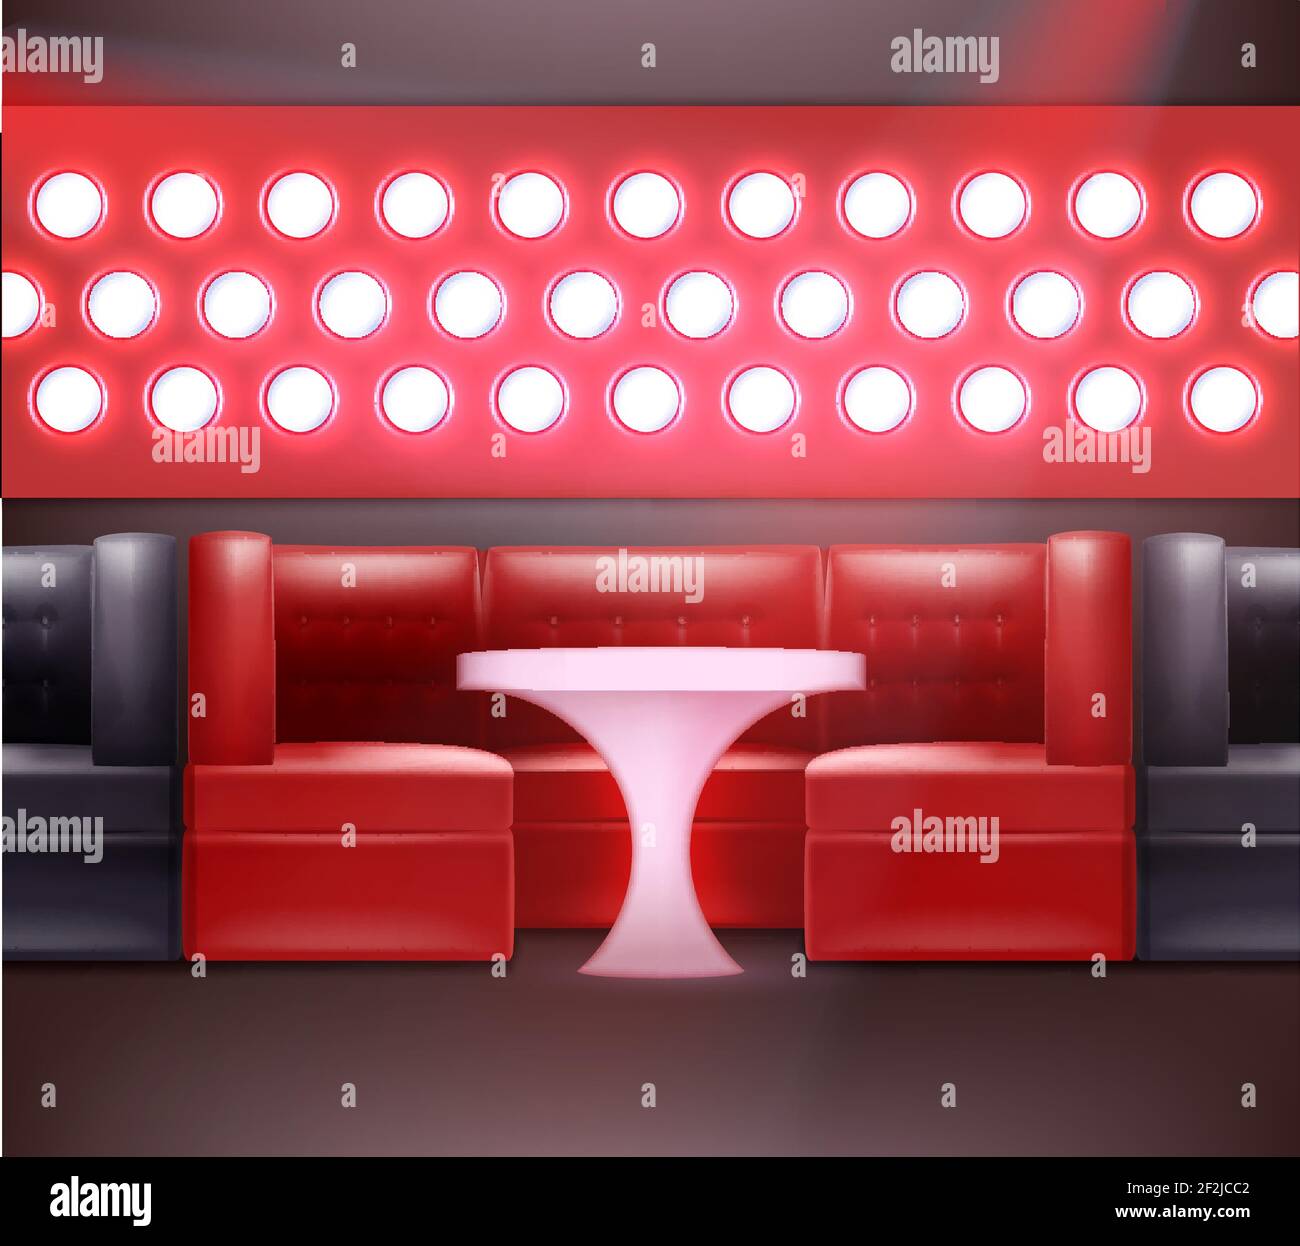 Intérieur de boîte de nuit Vector dans des tons rouges et noirs avec rétro-éclairage, fauteuils et table éclairée Illustration de Vecteur